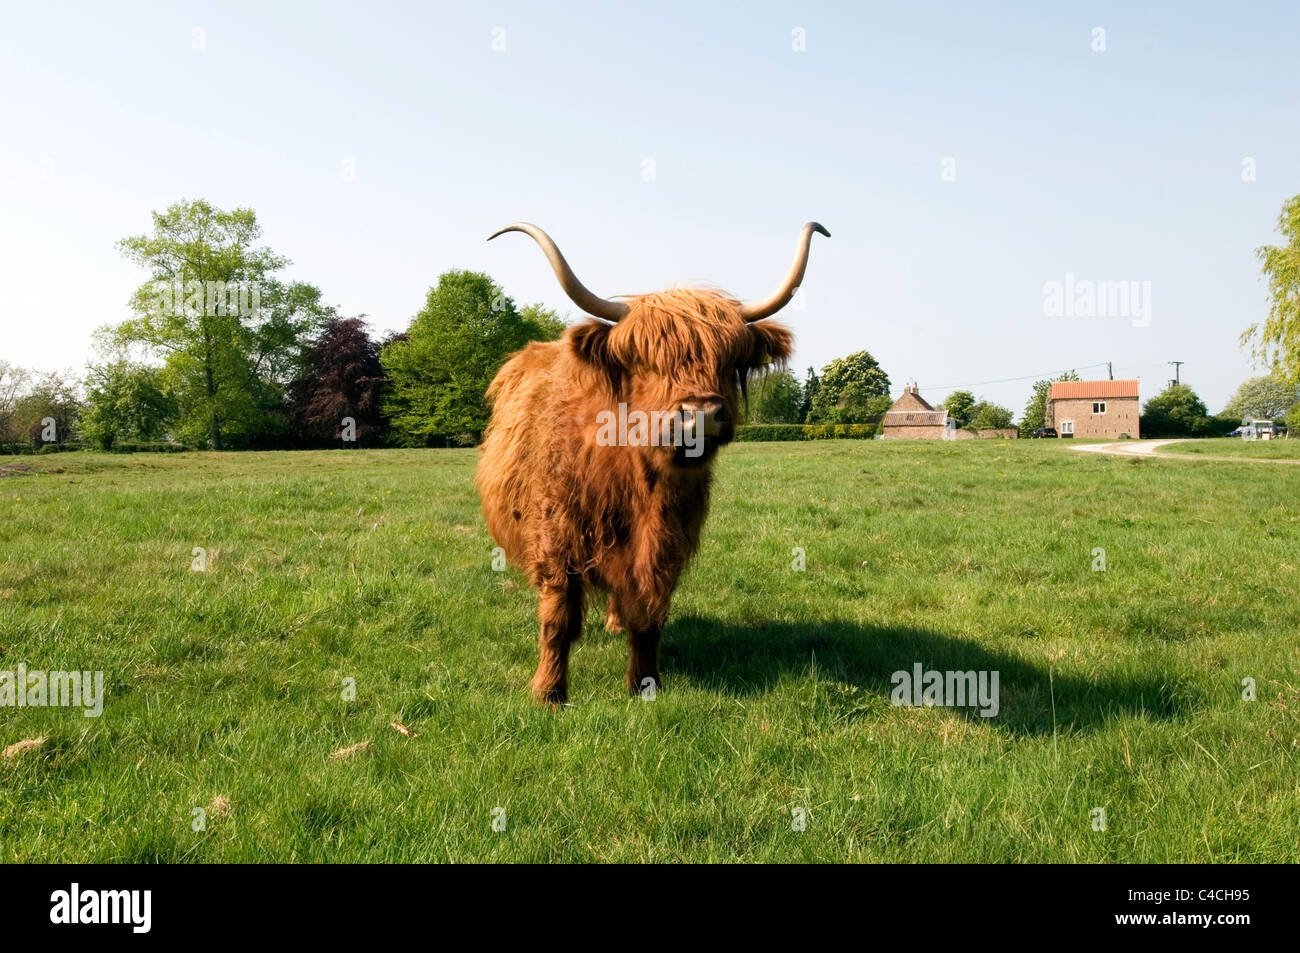 Vache poilue vaches Highland cattle laineux shaggy longue corne cornes bulls steer steer paître sur les terres de pâturage Banque D'Images